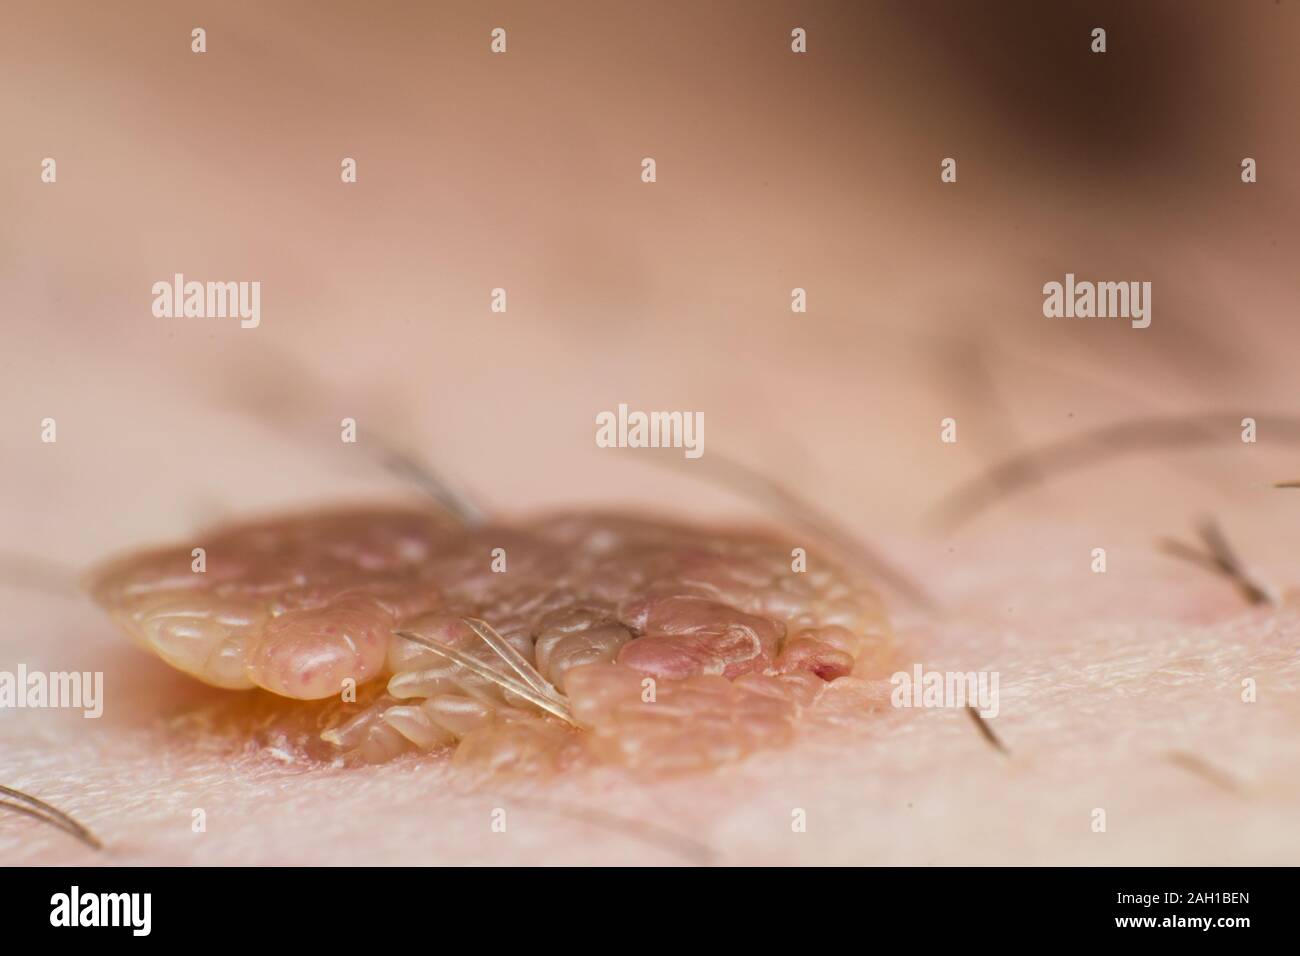 Papillomavirus immagini e fotografie stock ad alta risoluzione - Alamy